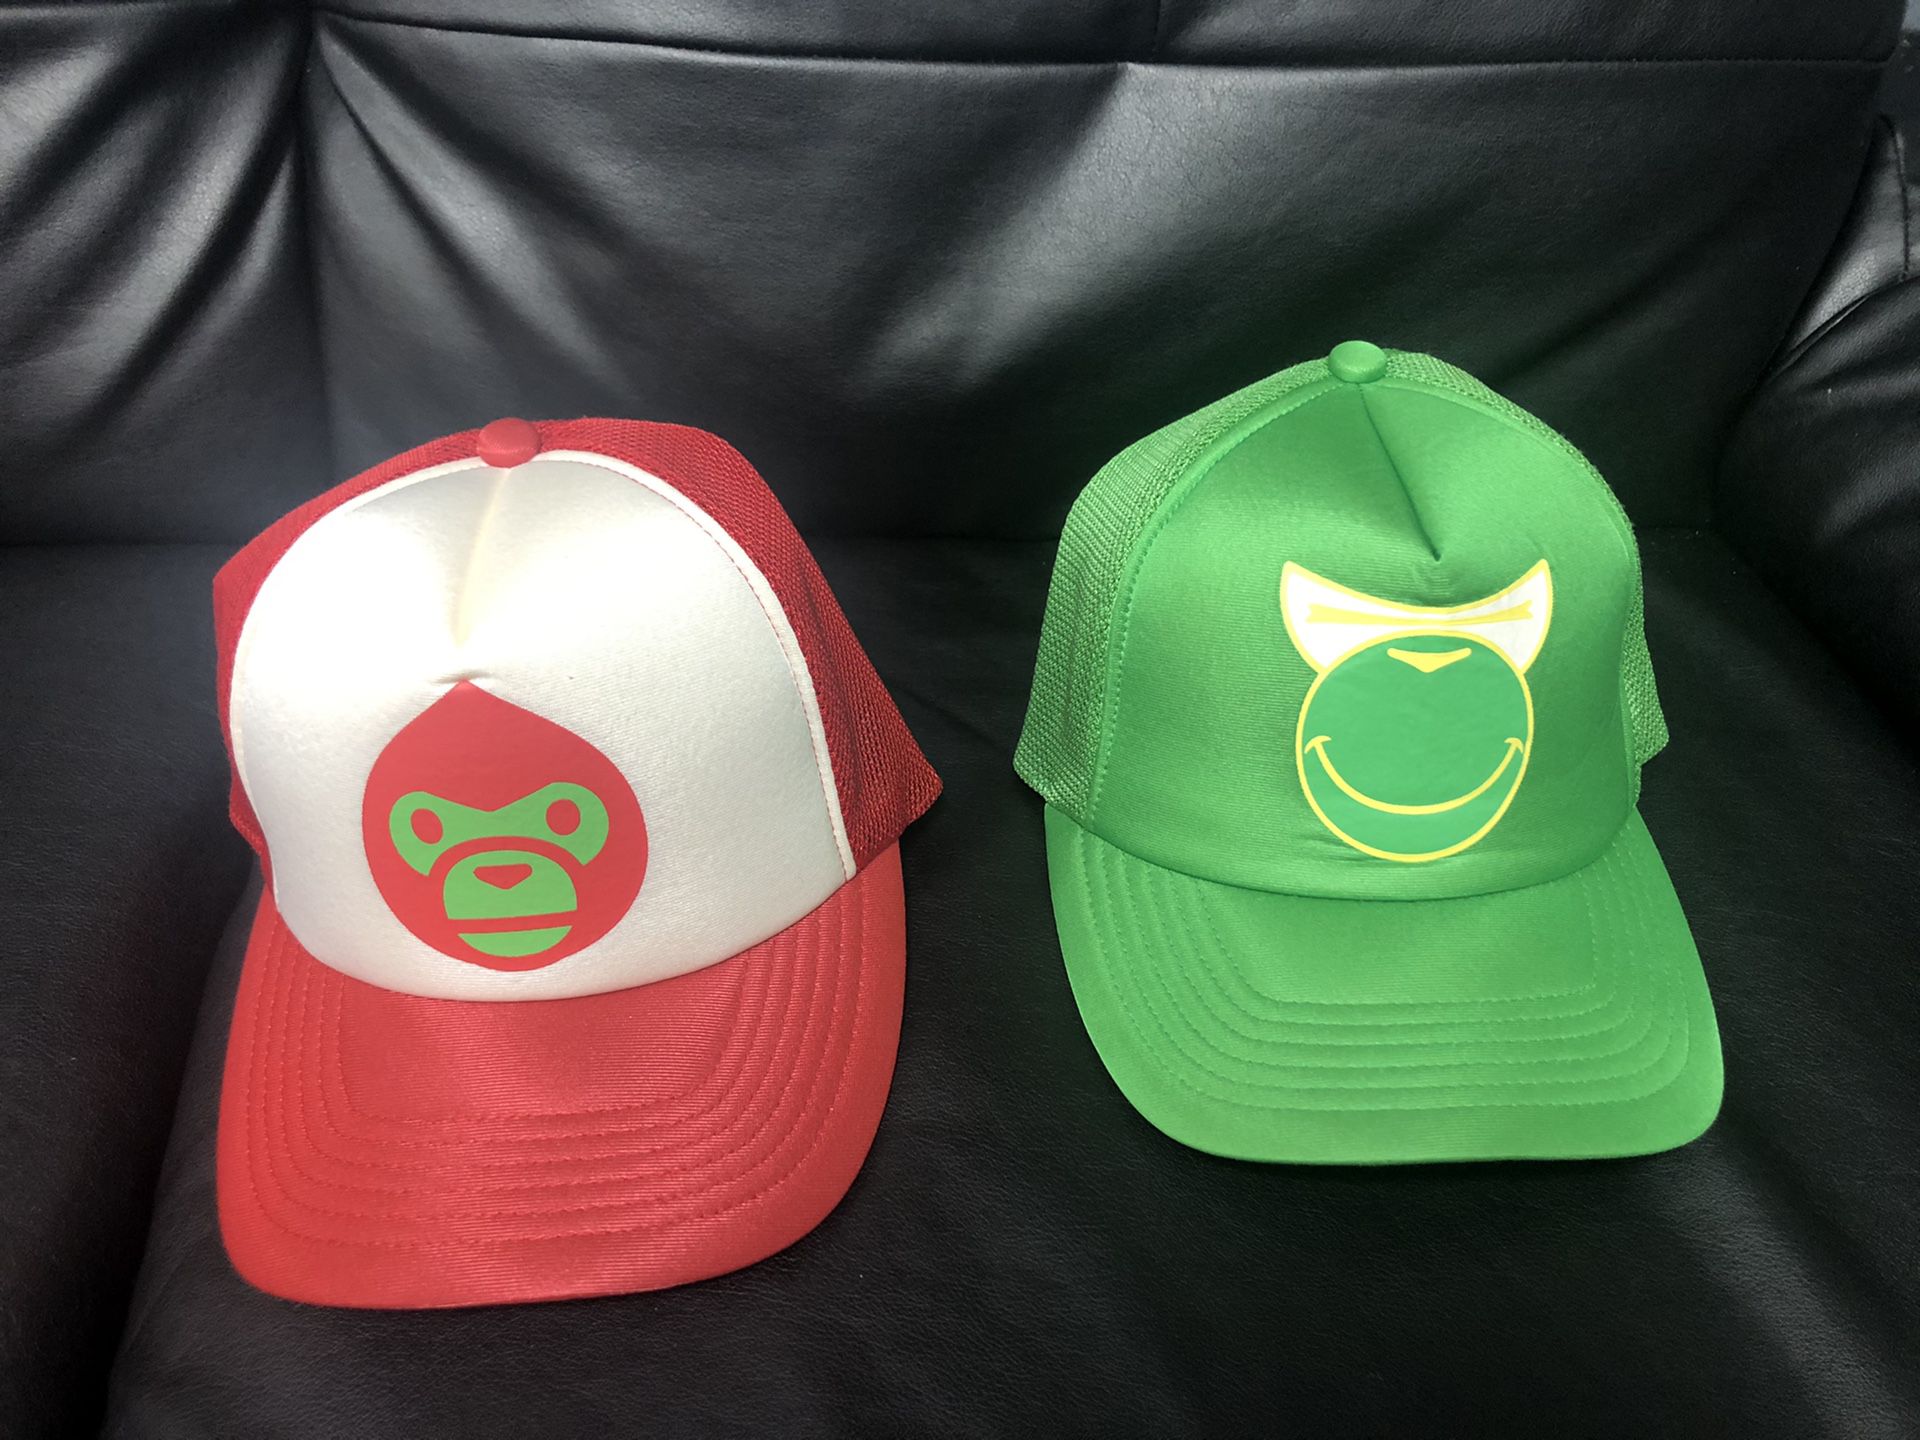 OG 2005 Bape Trucker Hat Brand New (RARE) $150 (Each)